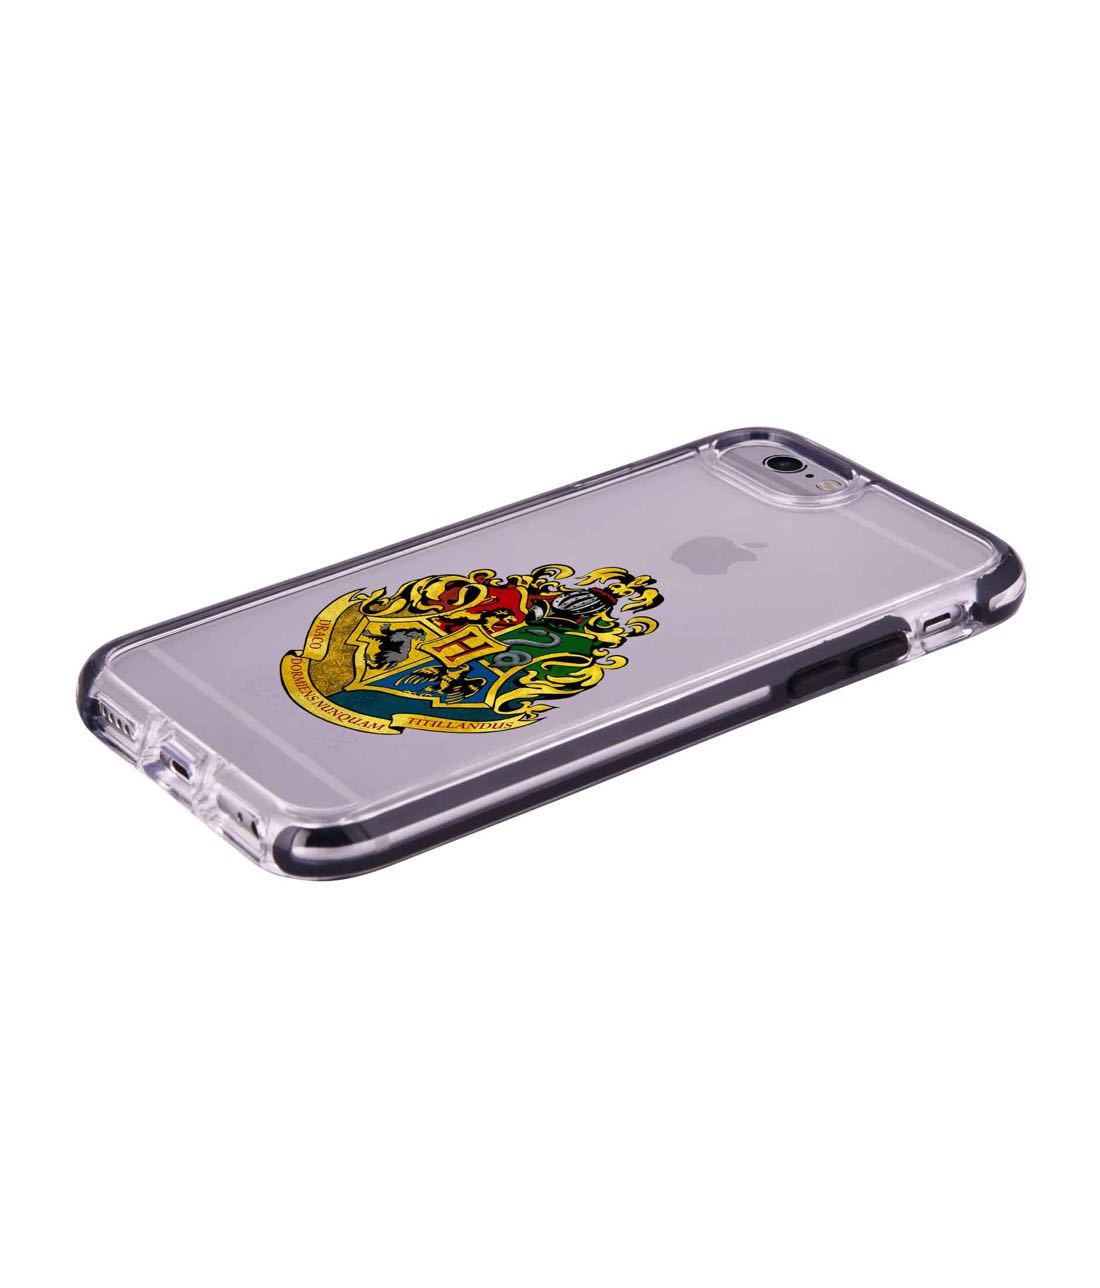 Hogwarts Sigil - Extreme Phone Case for iPhone 6 Plus